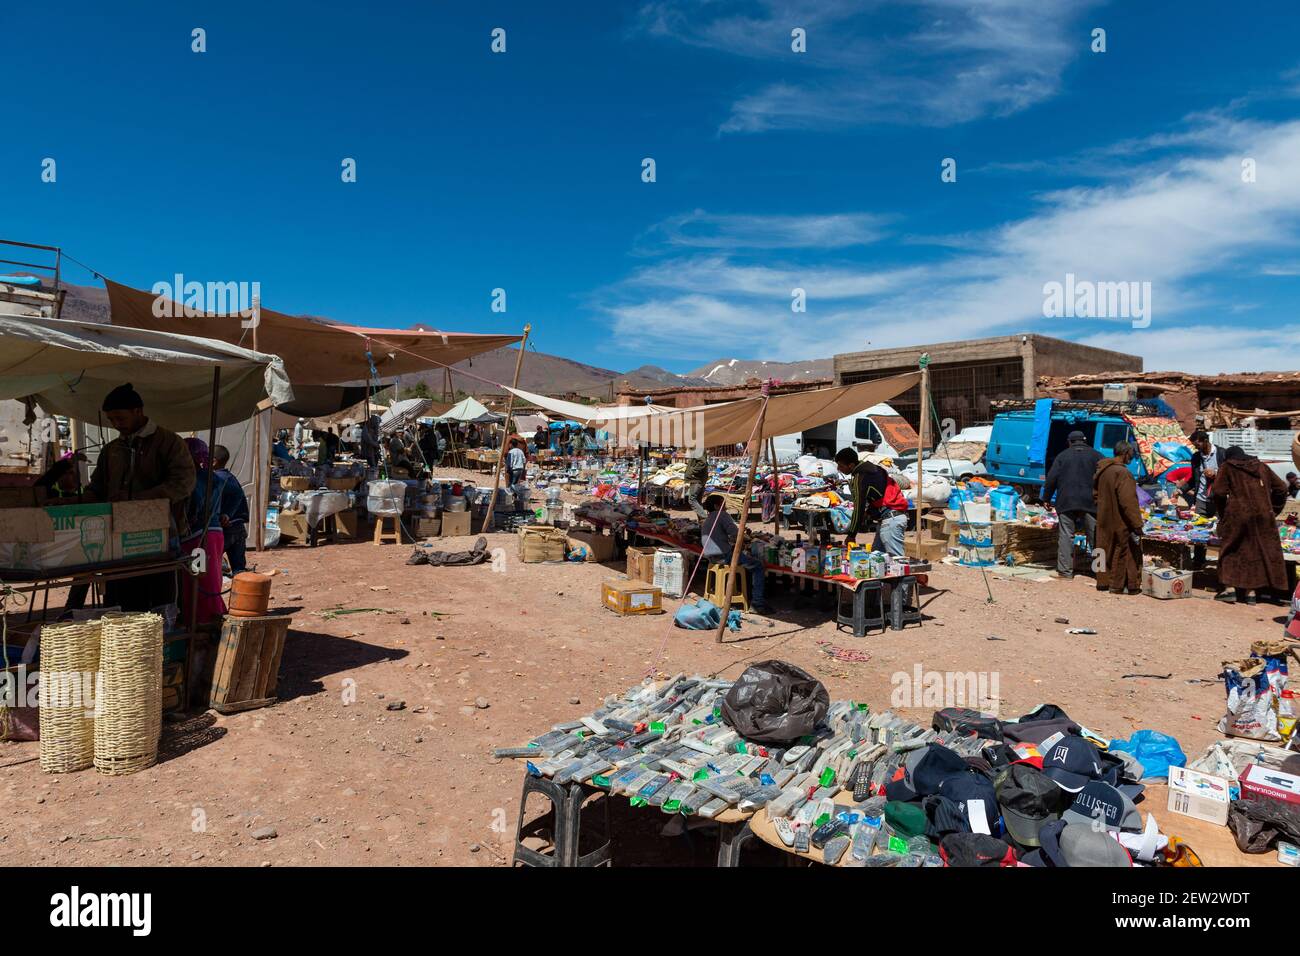 Telouet, Marokko - 14. April 2016: Straßenszene im Dorf Telouet, in der Atlas-Region von Marokko, mit Menschen in einem Straßenmarkt. Stockfoto